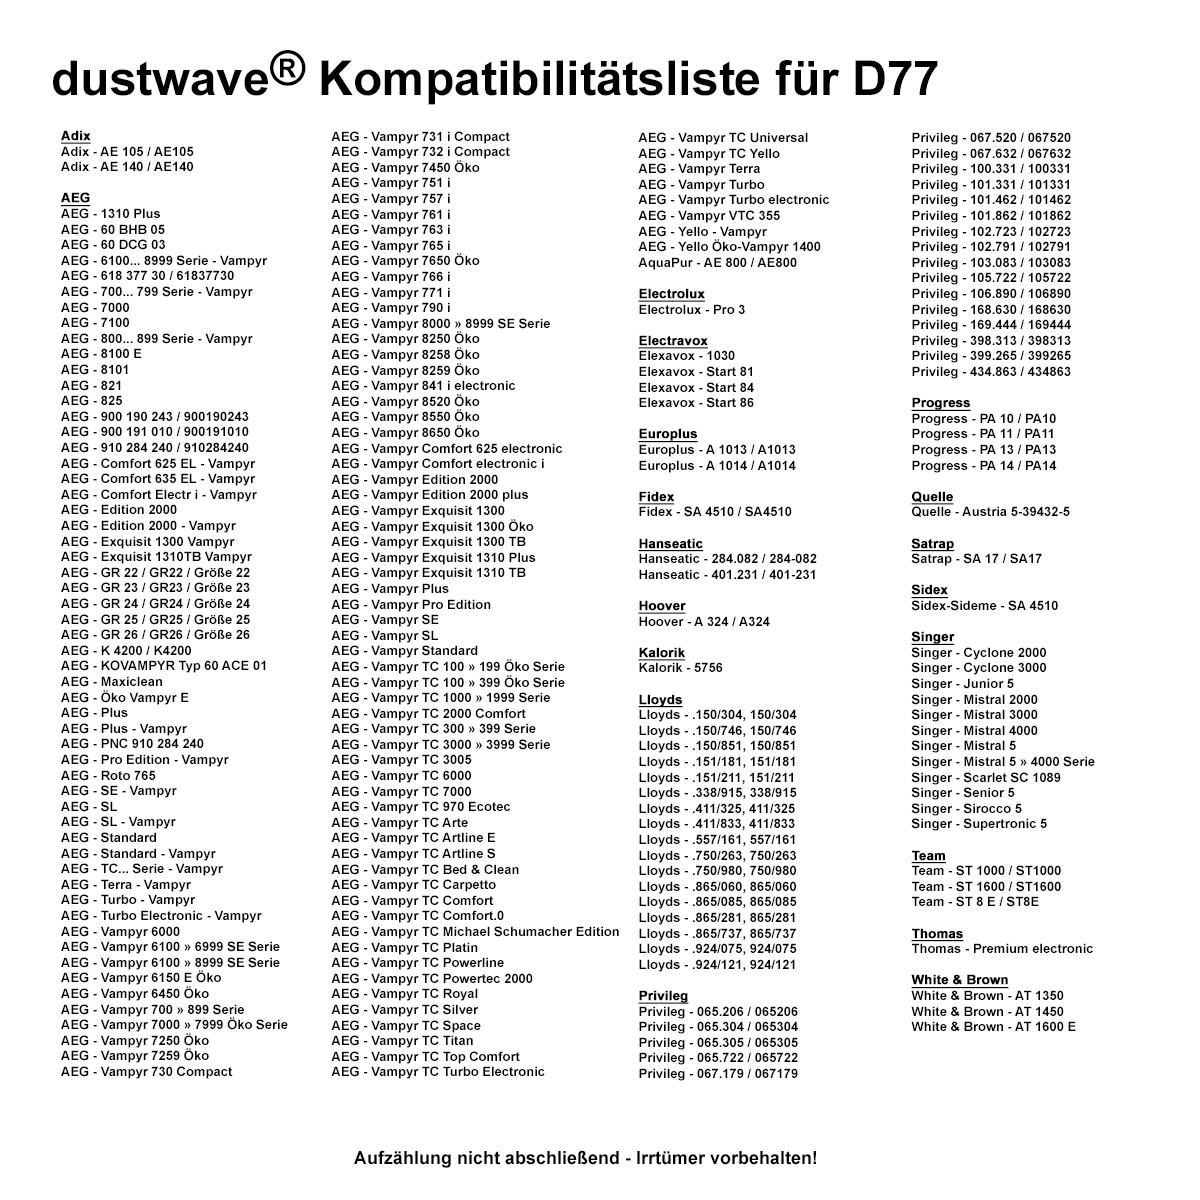 Dustwave® 10 Staubsaugerbeutel für AEG Vampyr 8300 Electronic - hocheffizient, mehrlagiges Mikrovlies mit Hygieneverschluss - Made in Germany